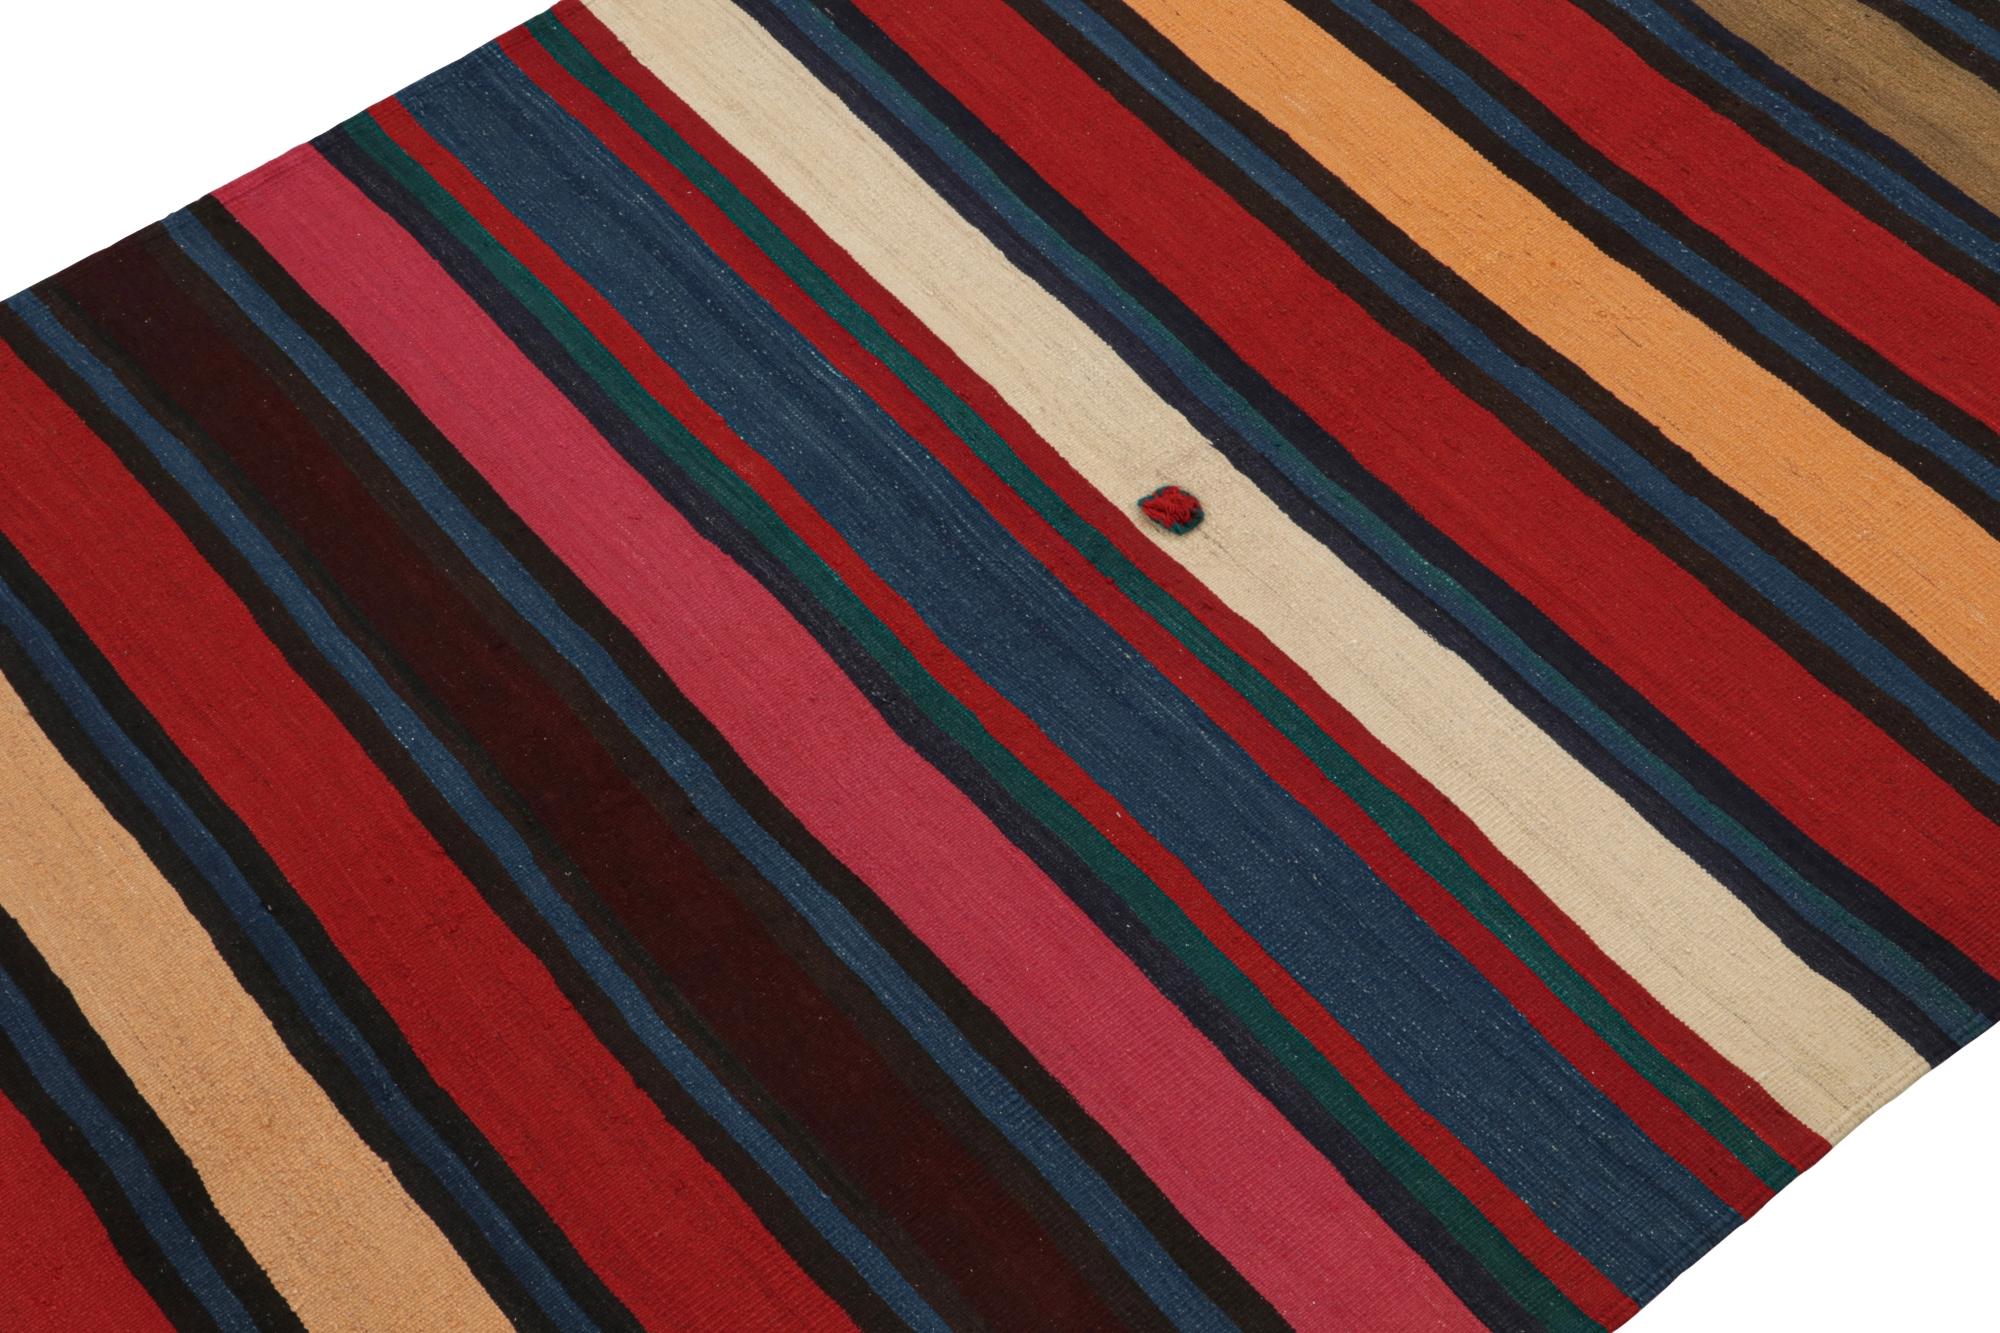 Ce kilim persan vintage 6x10 Shahsavan est tissé à la main en laine et date des années 1950-1960.

Sur le Design :

Cette pièce bénéficie d'une répétition de rayures dans des tons de joyaux saturés de rouge, de bleu, de rose et d'autres teintes